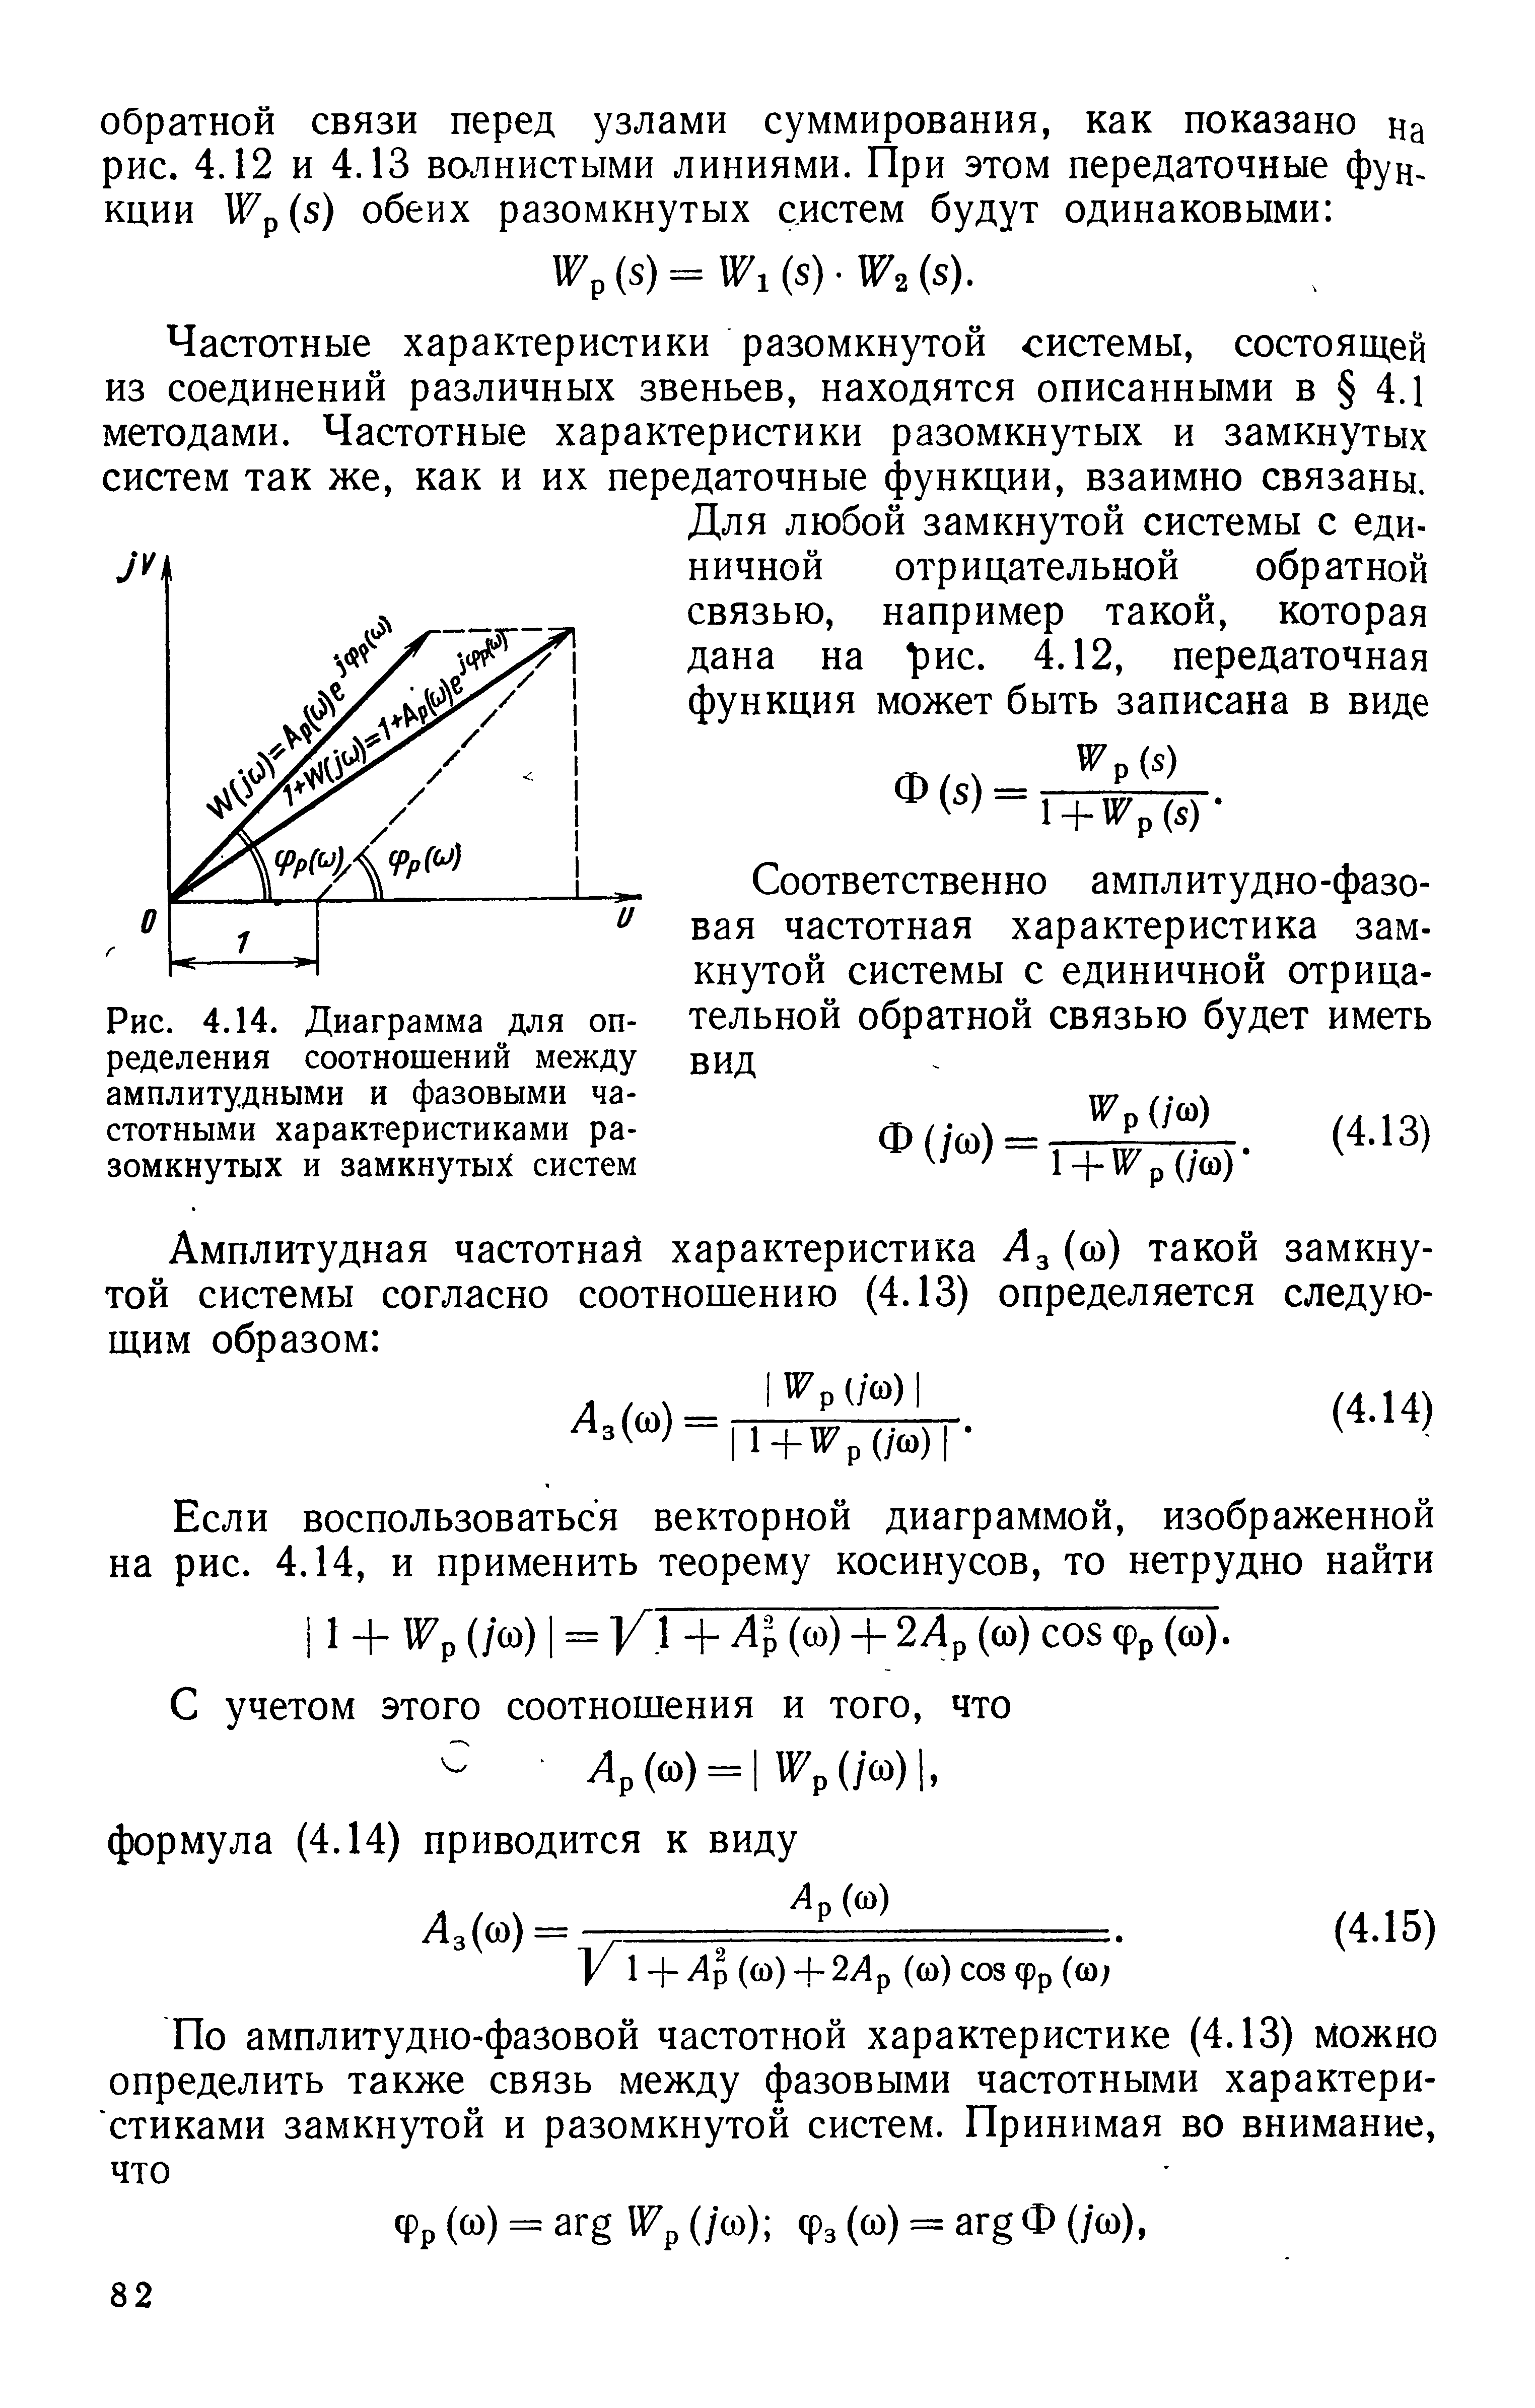 Рис. 4.14. Диаграмма для определения соотношений между амплитудными и <a href="/info/22473">фазовыми частотными характеристиками</a> разомкнутых и замкнутый систем
